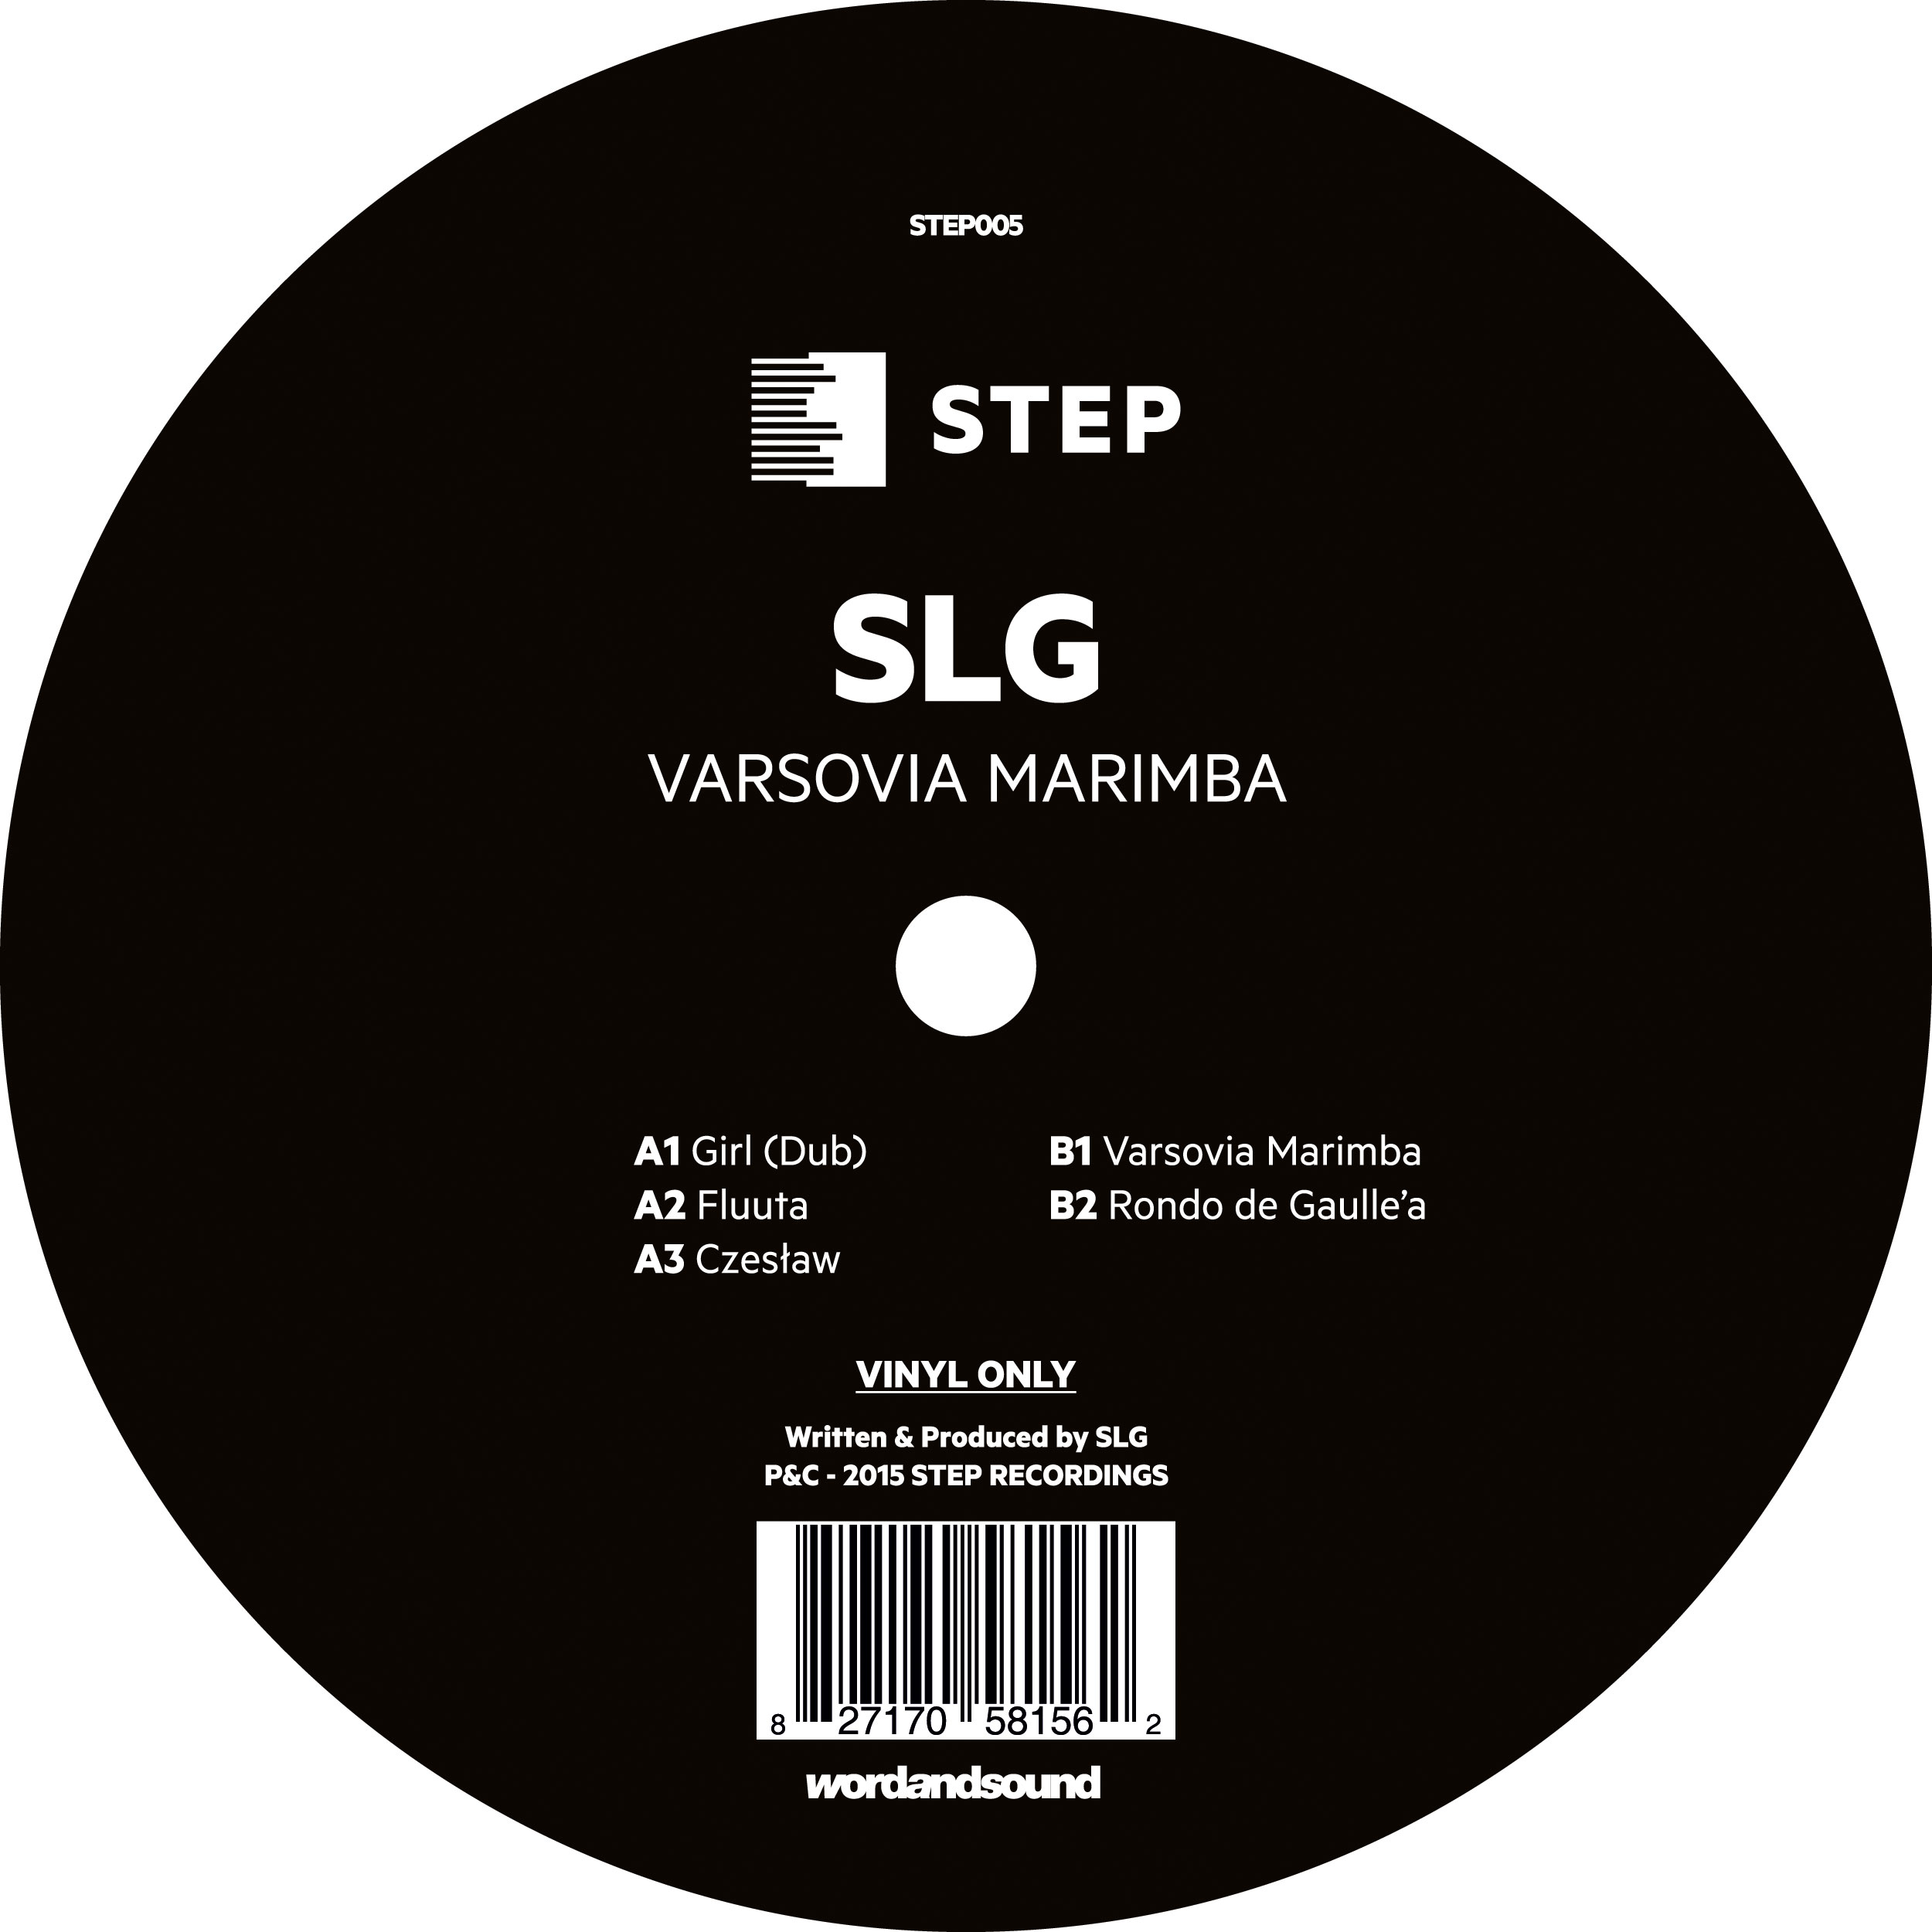 SLG - Varsovia Marimba EP [STEP005]